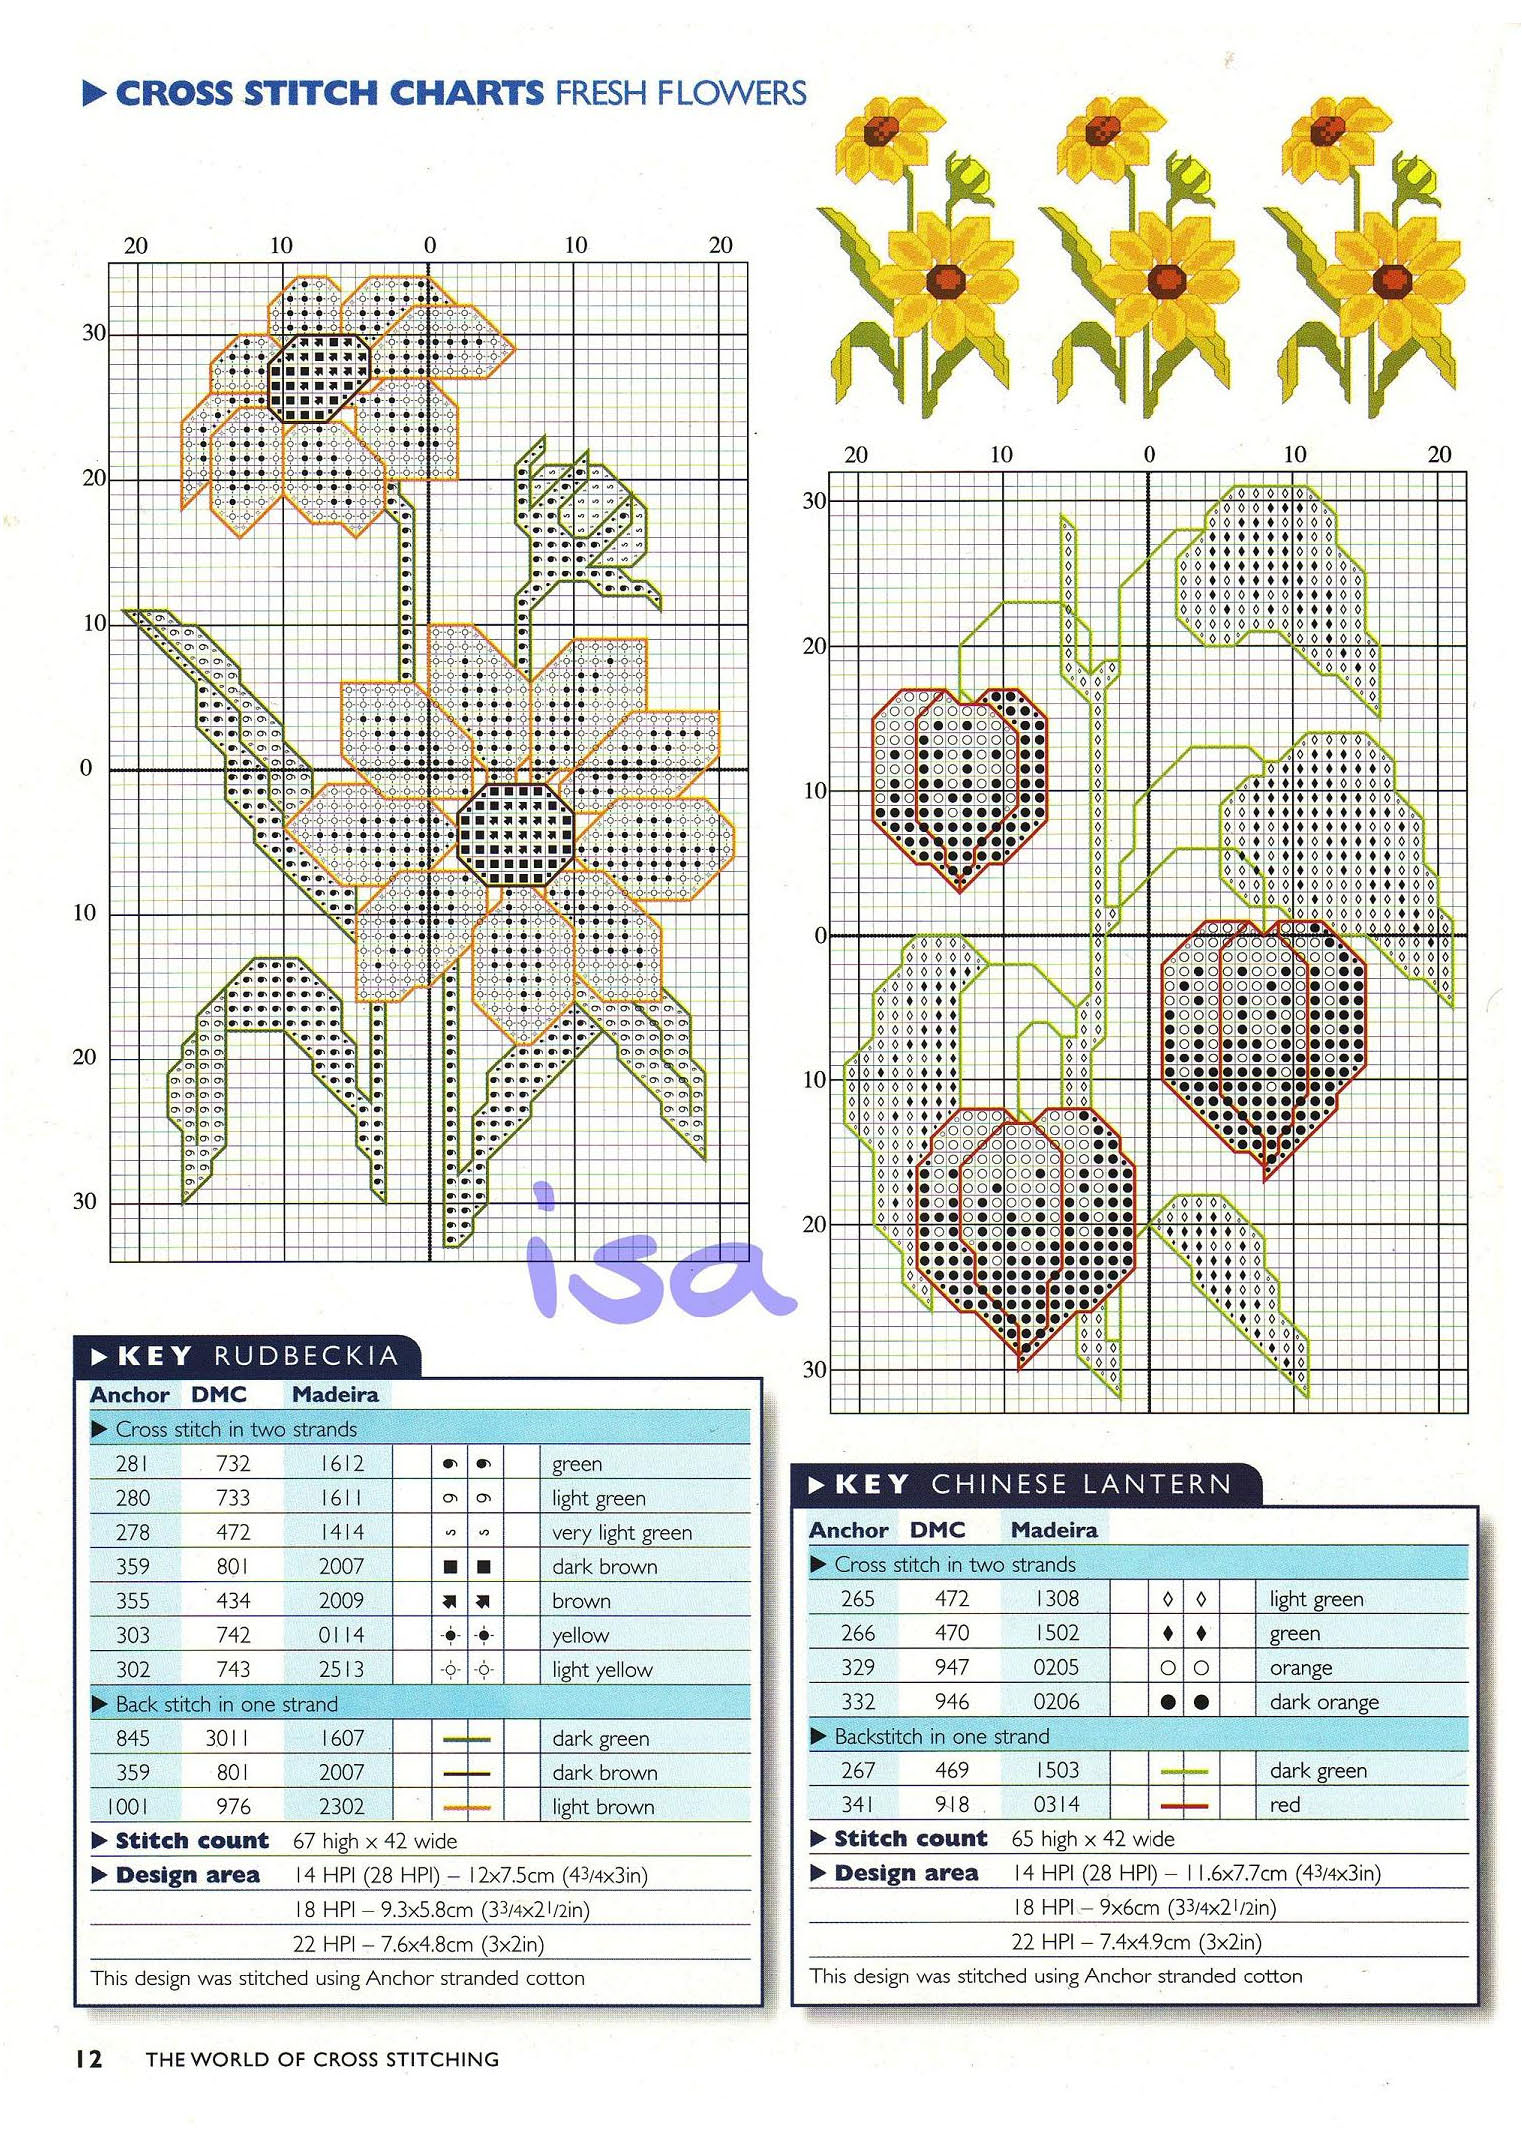 Rudbeckia and Chinese lantern cross stitch pattern